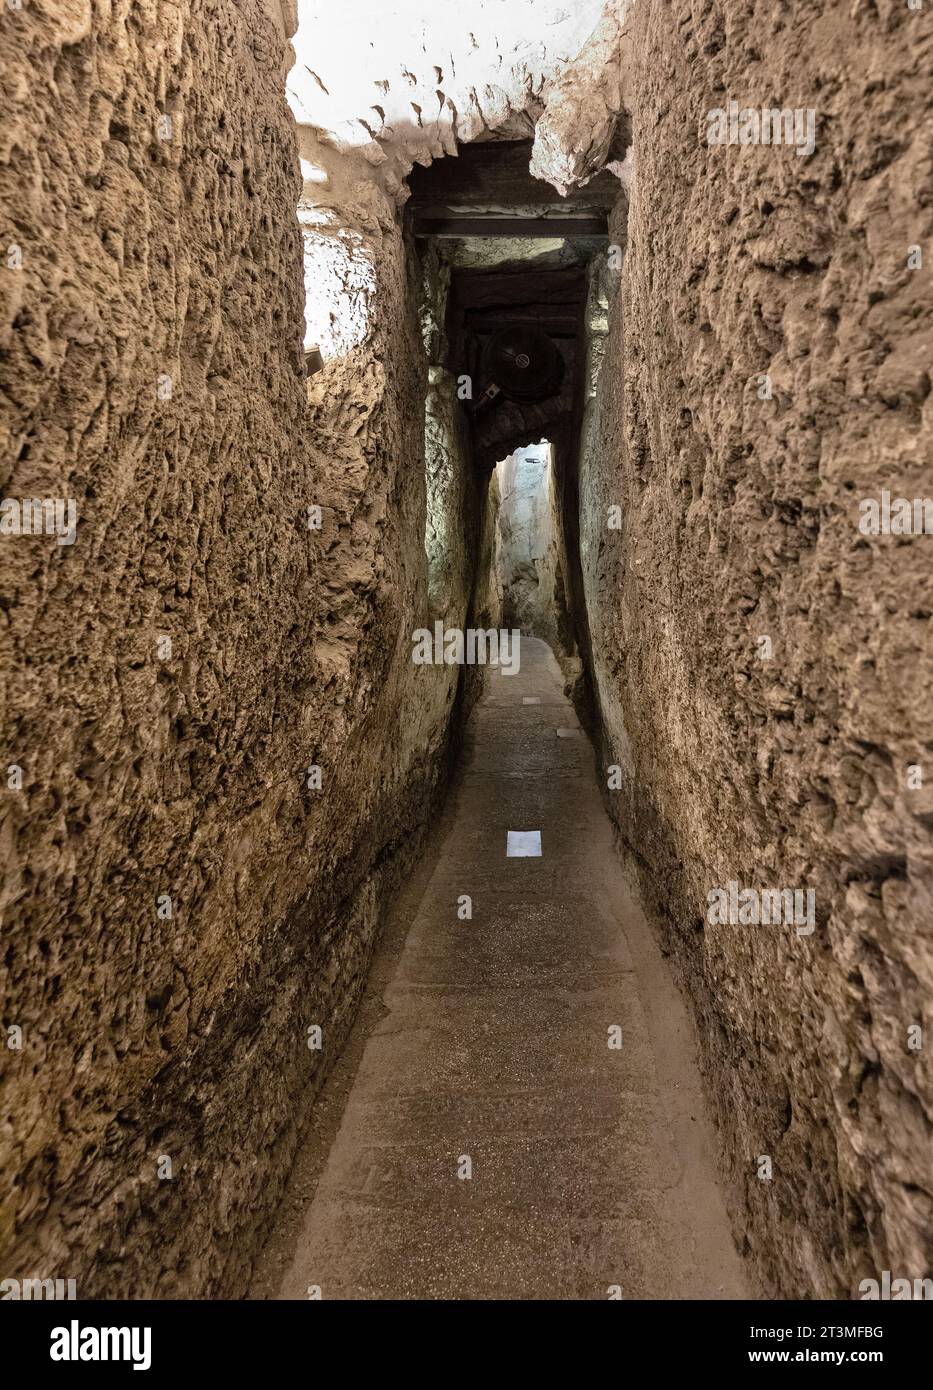 Jérusalem, Israël - 13 octobre 2017 : tunnel souterrain du mur occidental avec passage de canal d'eau Hasmonean le long des murs du mont du Temple dans la vieille ville Banque D'Images